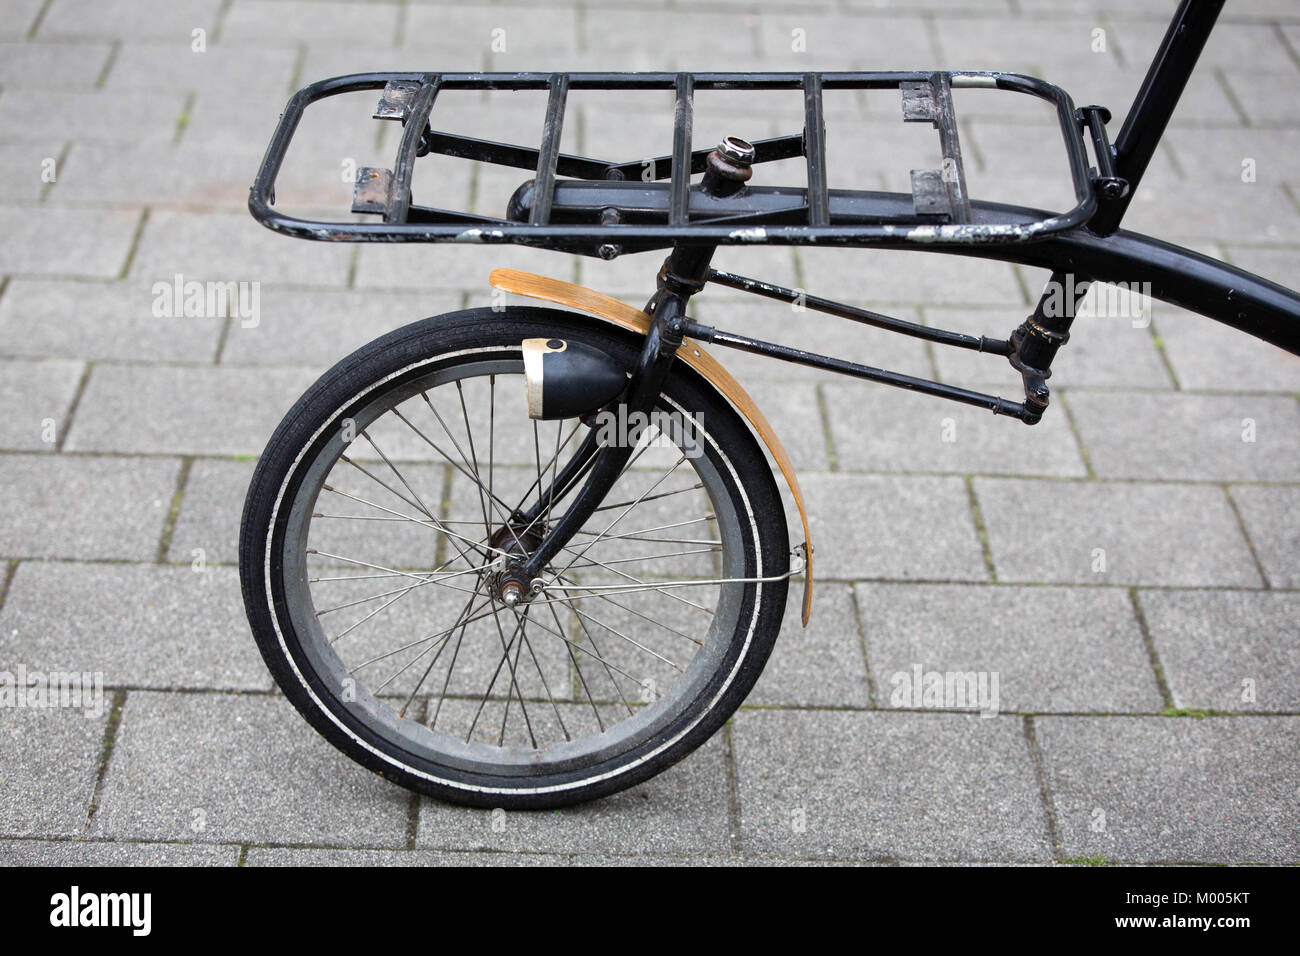 Détail de l'avant d'un vélo cargo vintage Photo Stock - Alamy